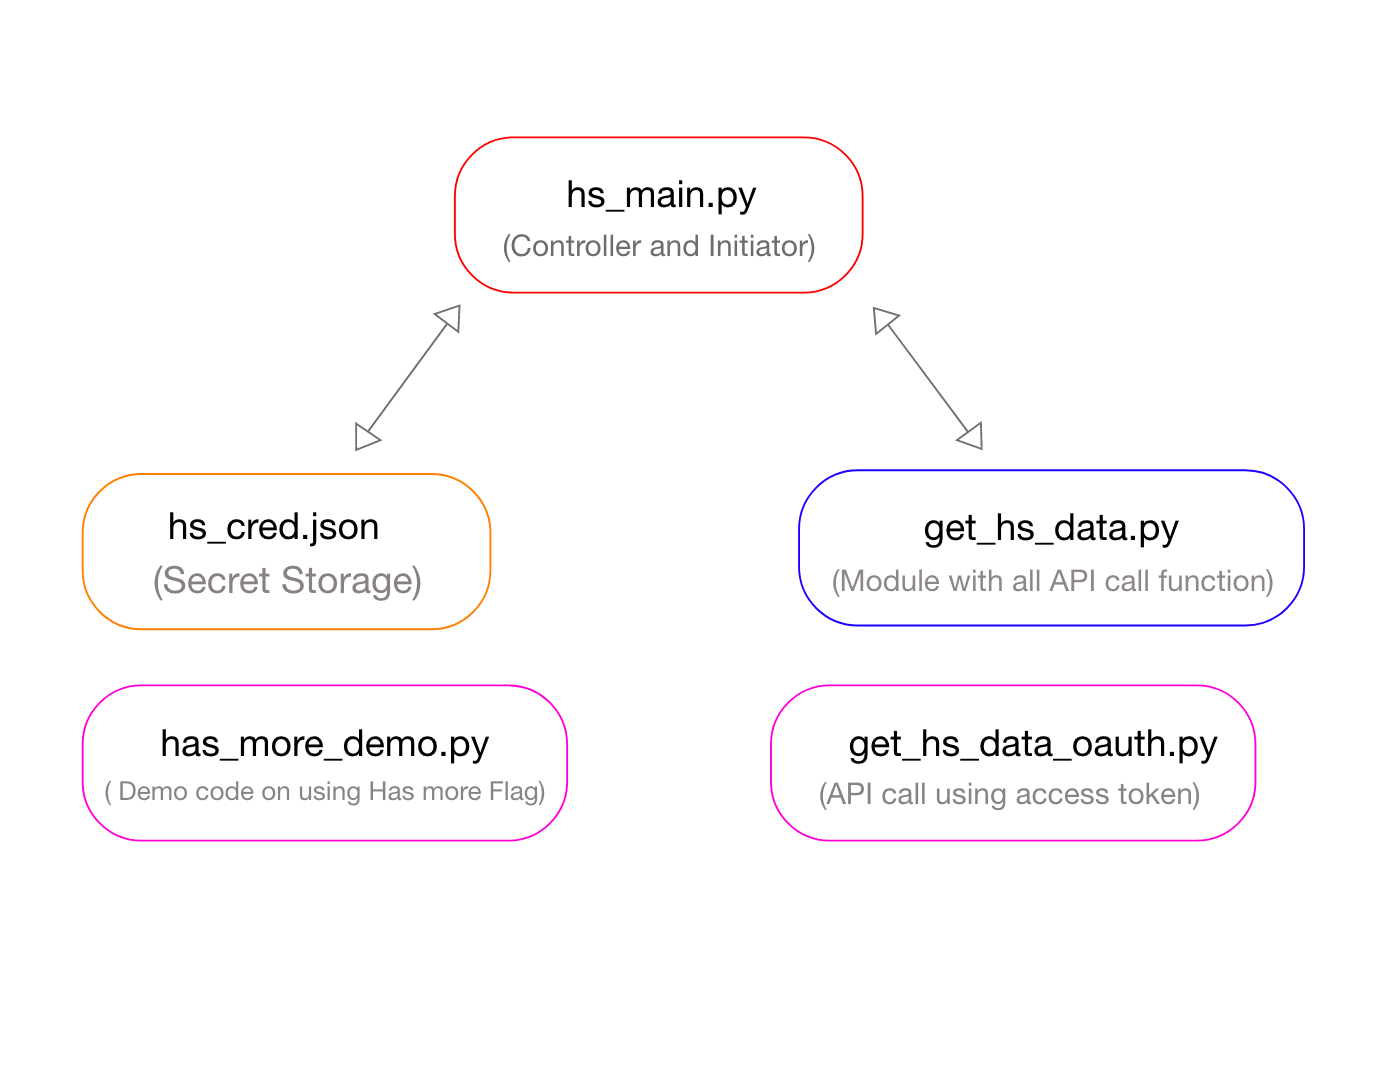 Python code to get data from HubSpot using HubSpot API